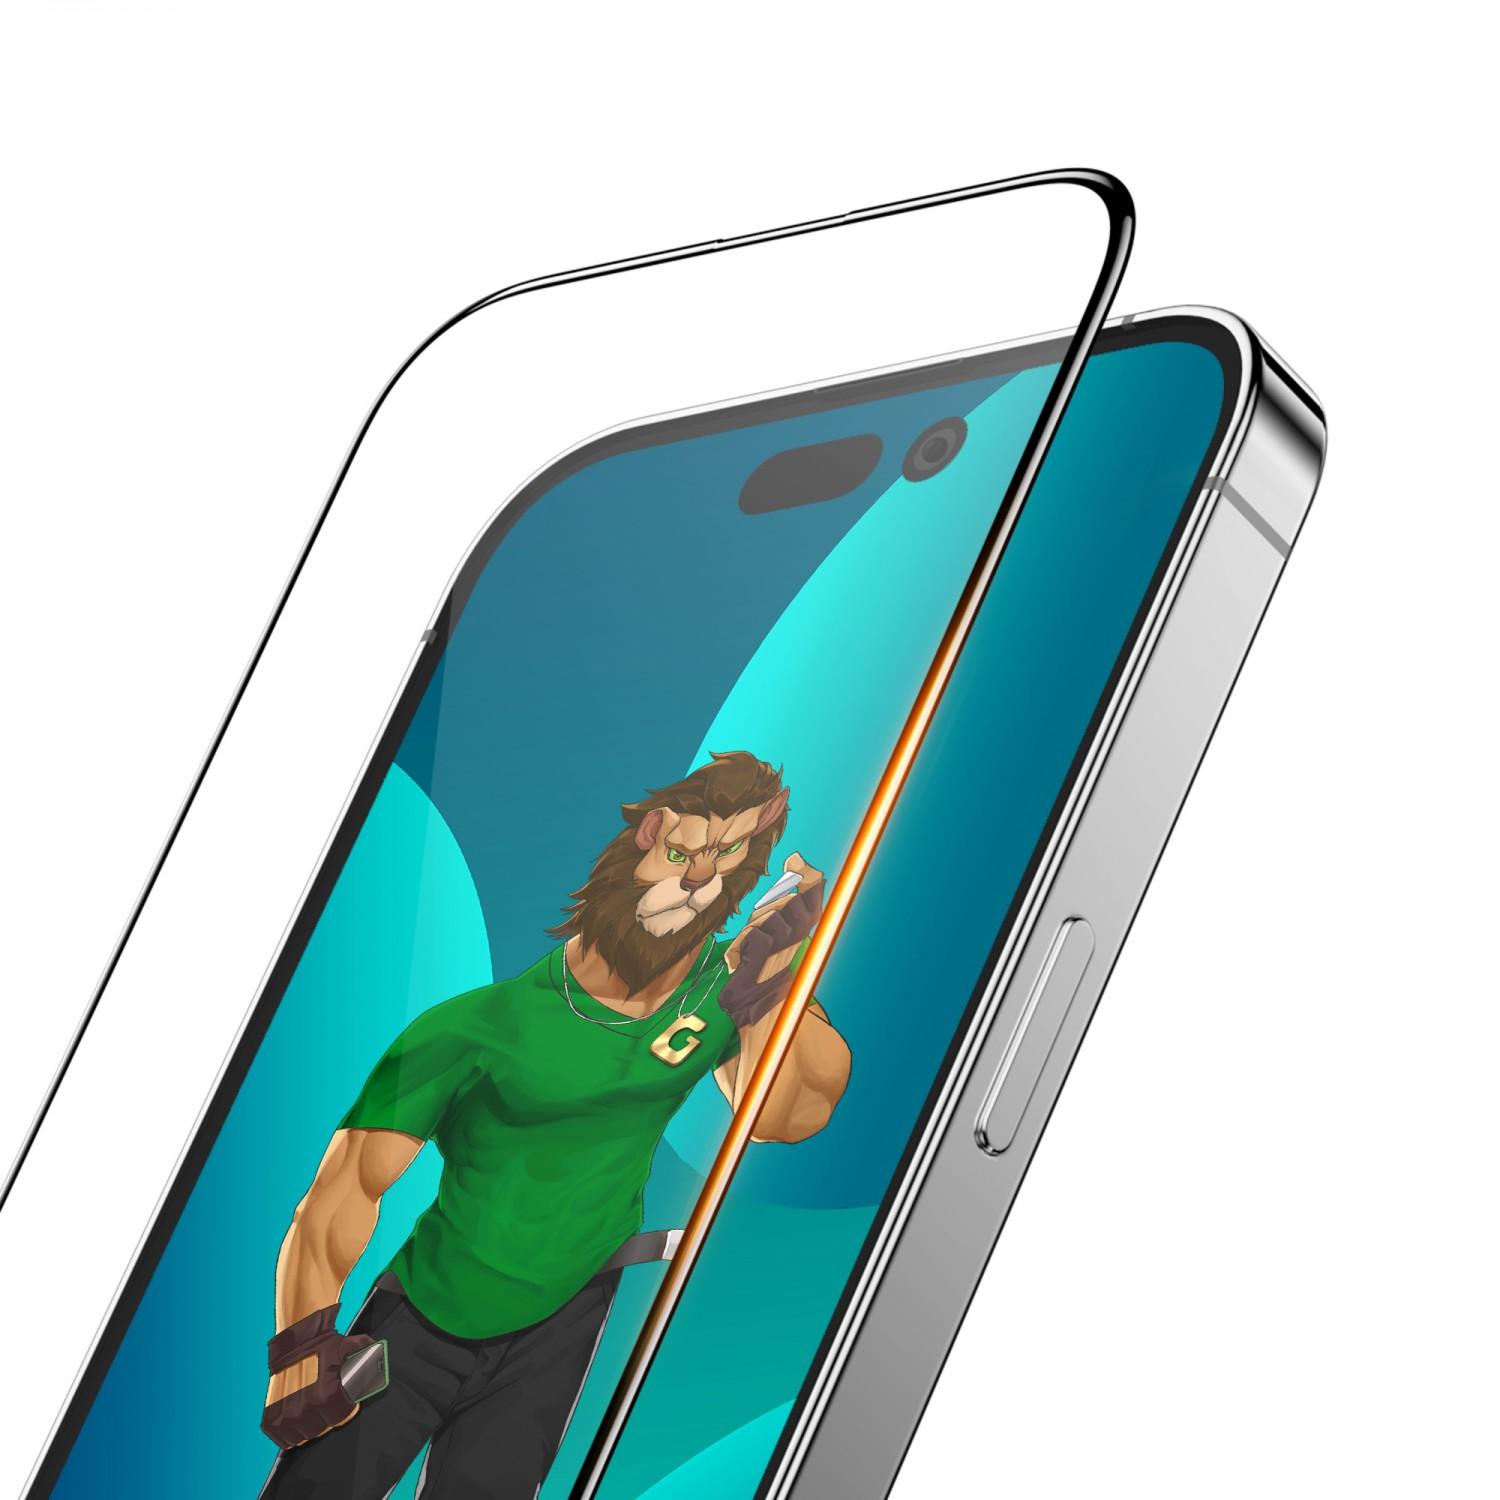 لاصقة حماية الشاشة لموبايل ايفون 14 برو ماكس زجاجية جرين Green 3D PET HD Glass Screen Protector for iPhone 14 Pro Max Clear - cG9zdDoxMzc5NzI0